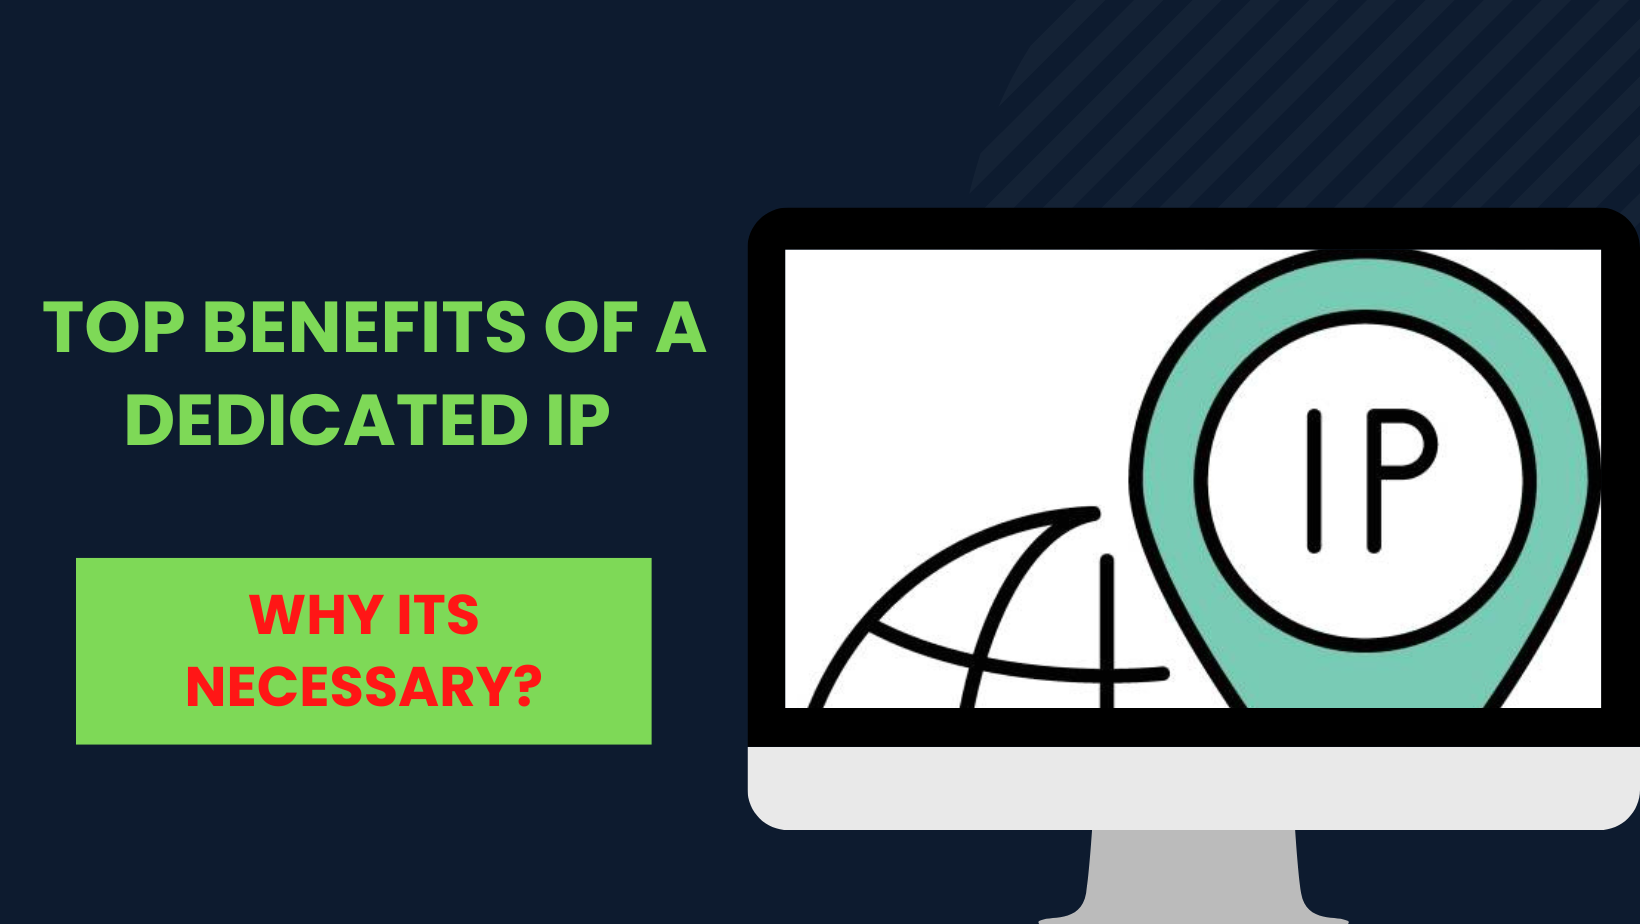 Top Benefits of Dedicated IPs